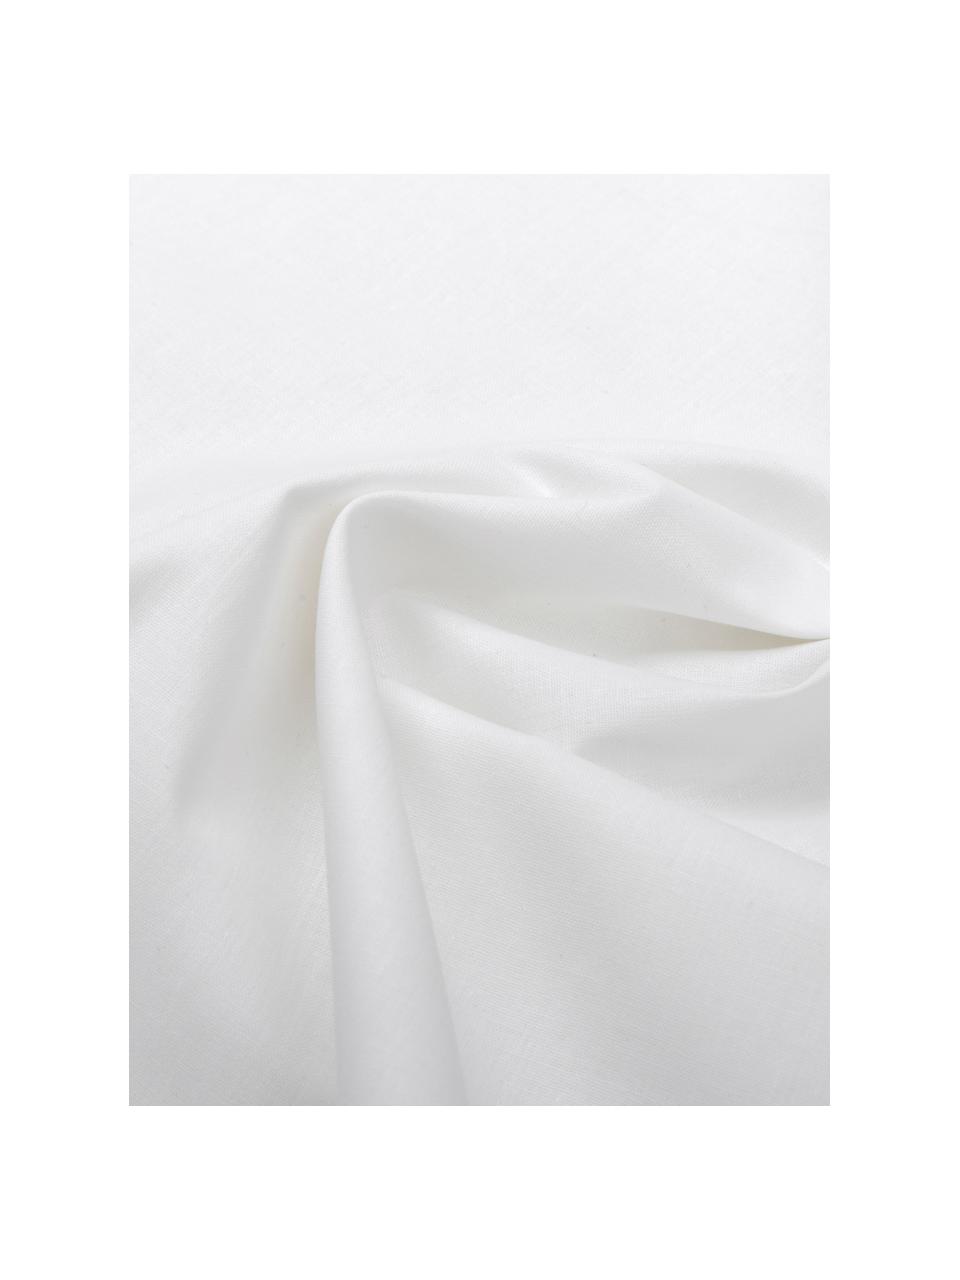 Pościel z bawełny Weekend, Biały, 135 x 200 cm + 1 poduszka 80 x 80 cm